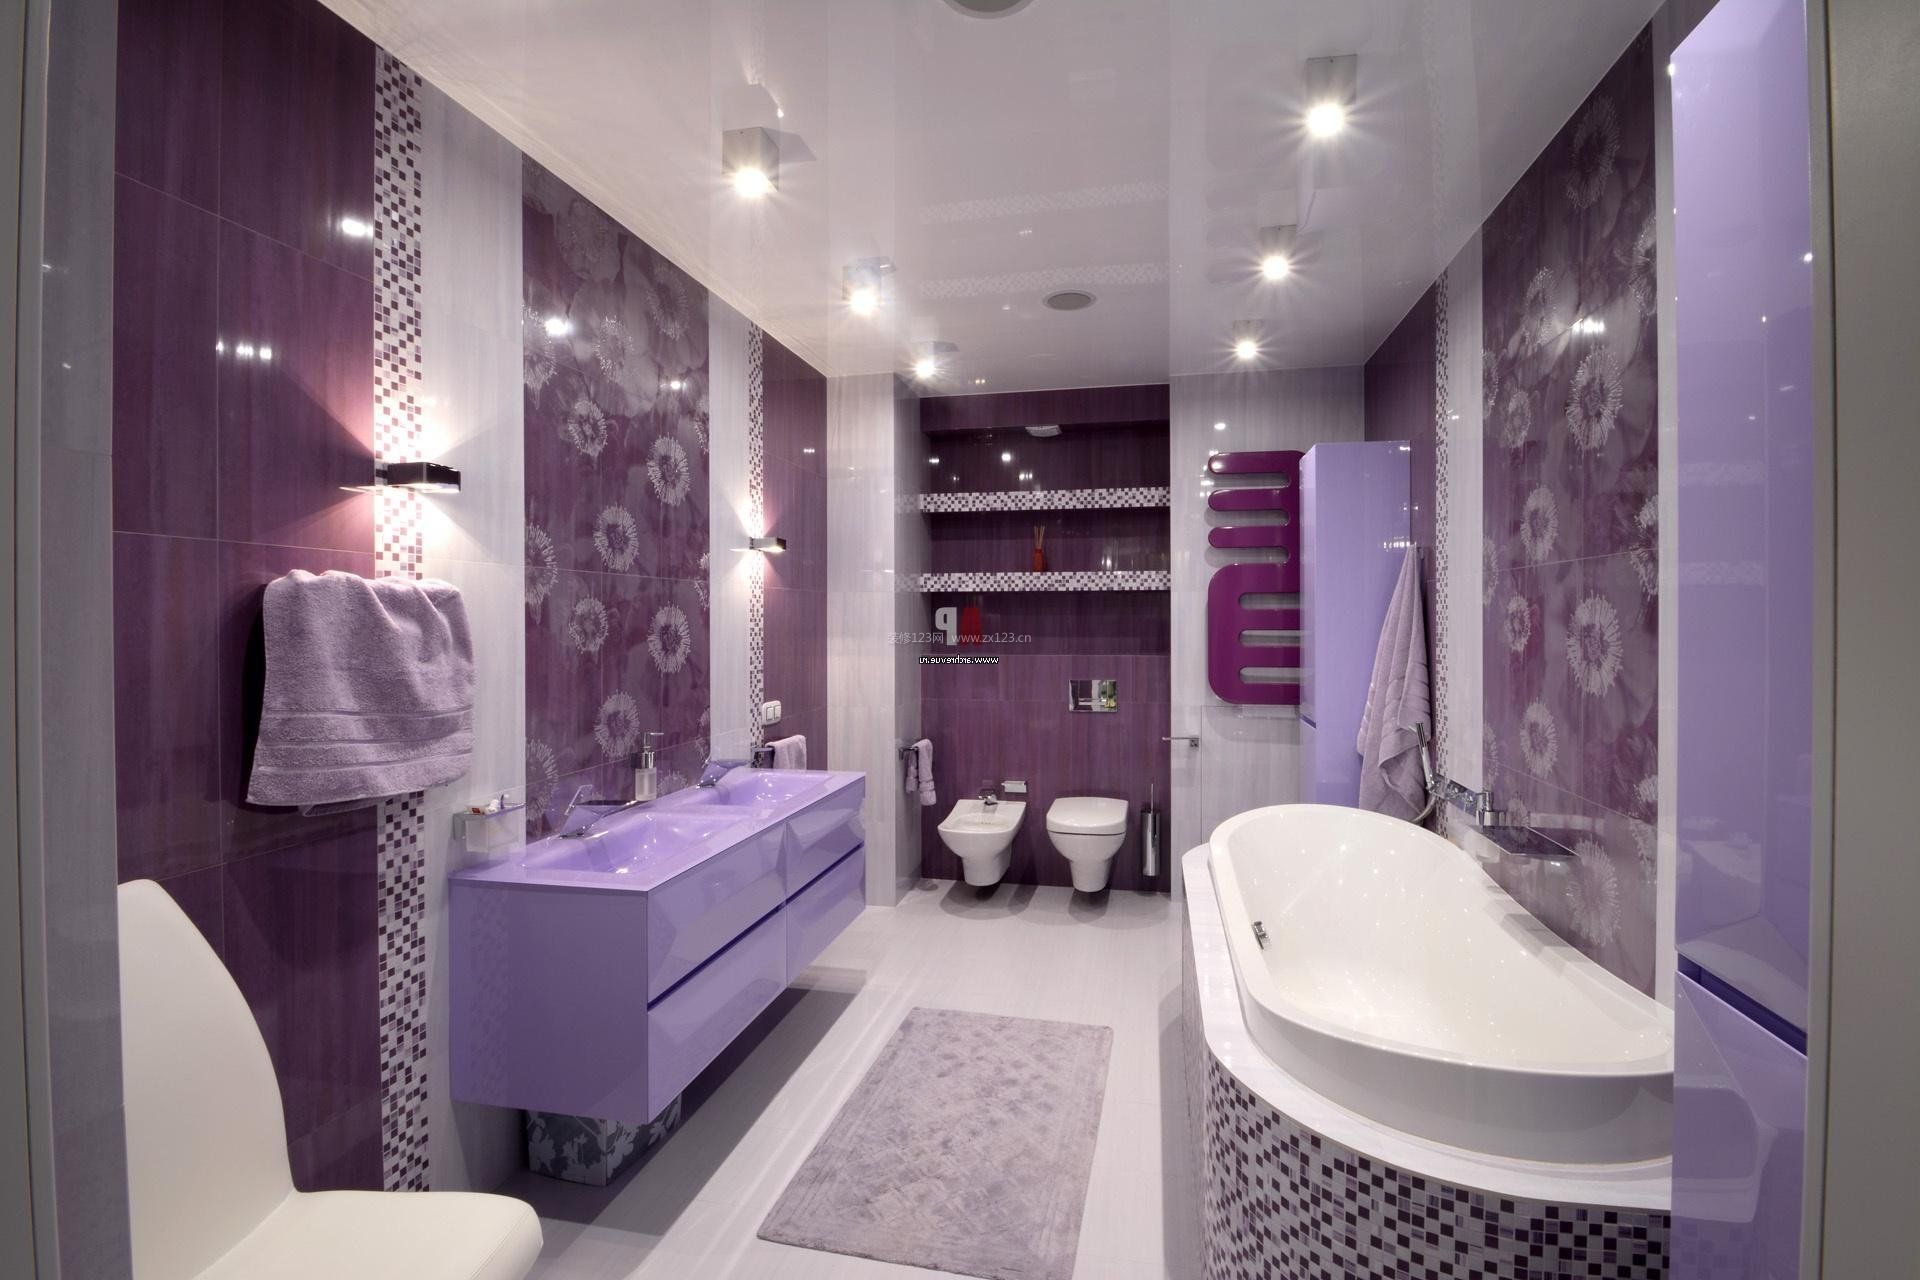 浴室房间浅紫色设计效果图